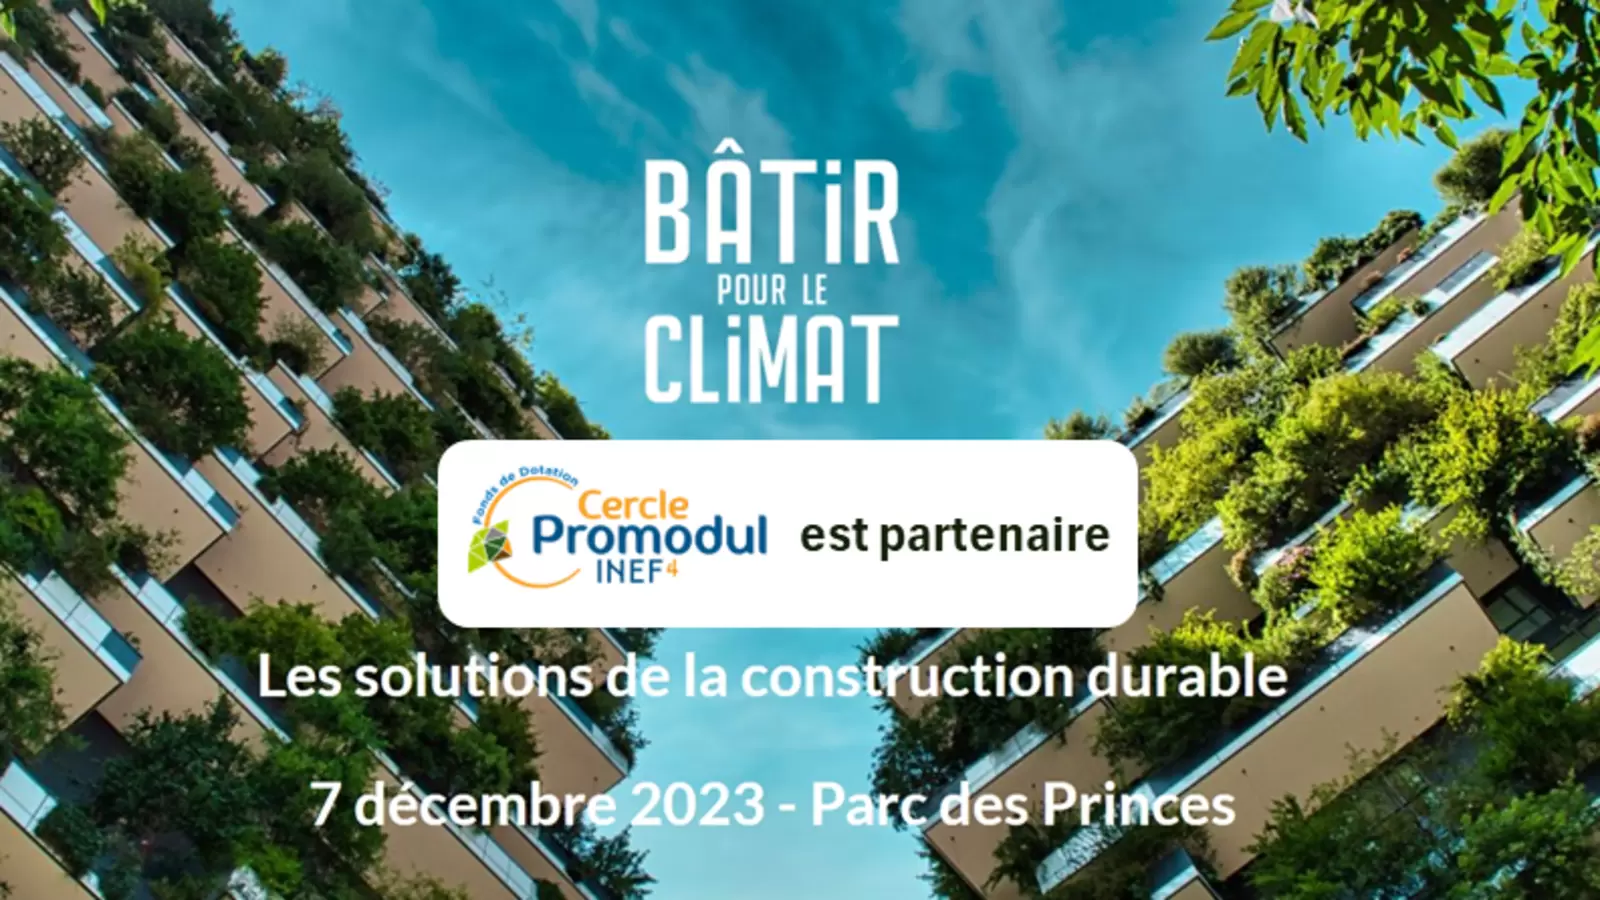 Cercle Promodul / INEF4 partenaire de l’édition 2023 de Bâtir pour le Climat